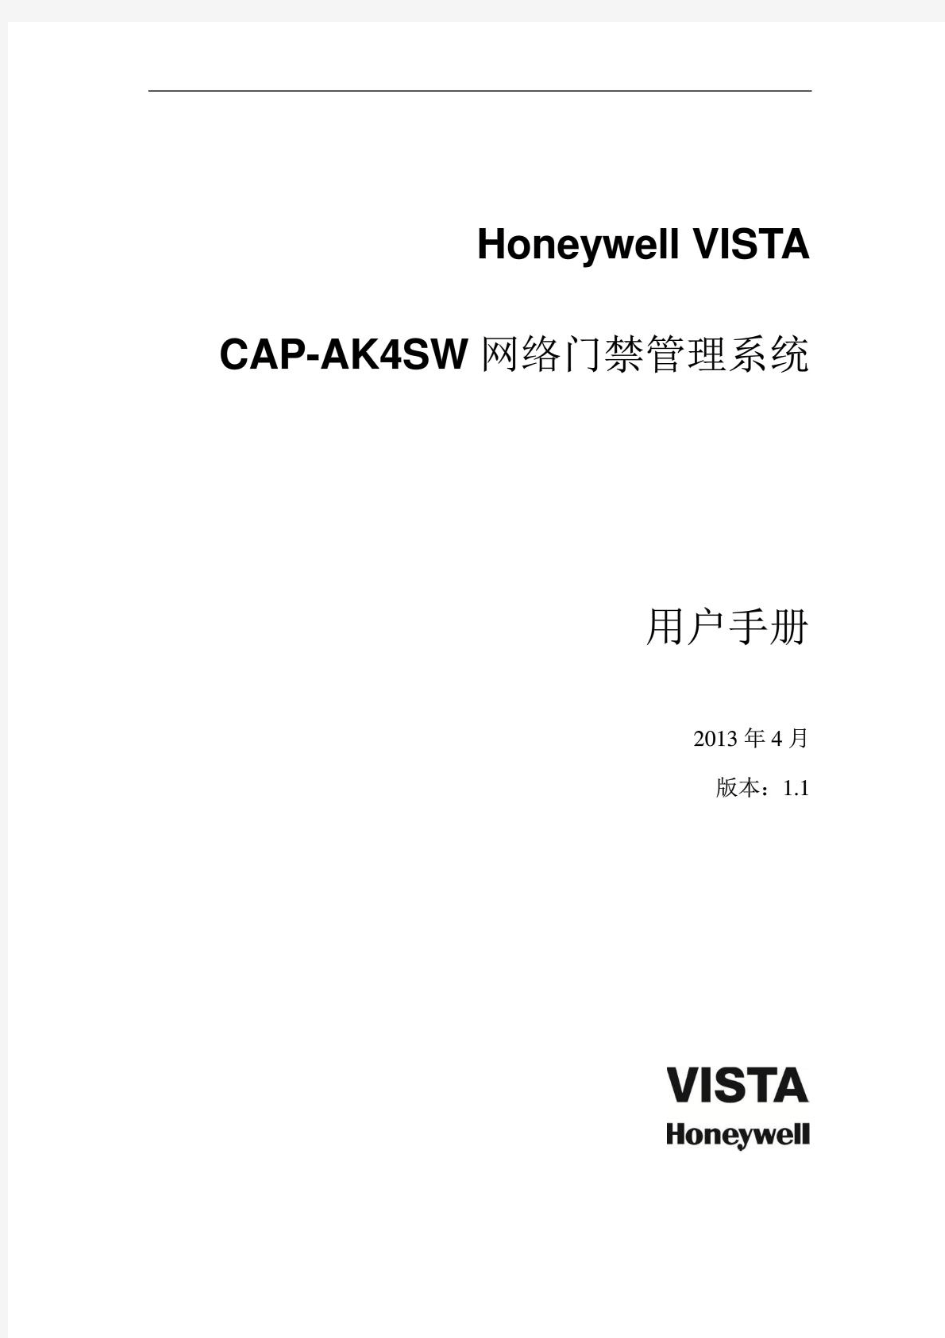 CAP-AK4SW(V1.0)门禁管理系统_用户使用手册_V1.1